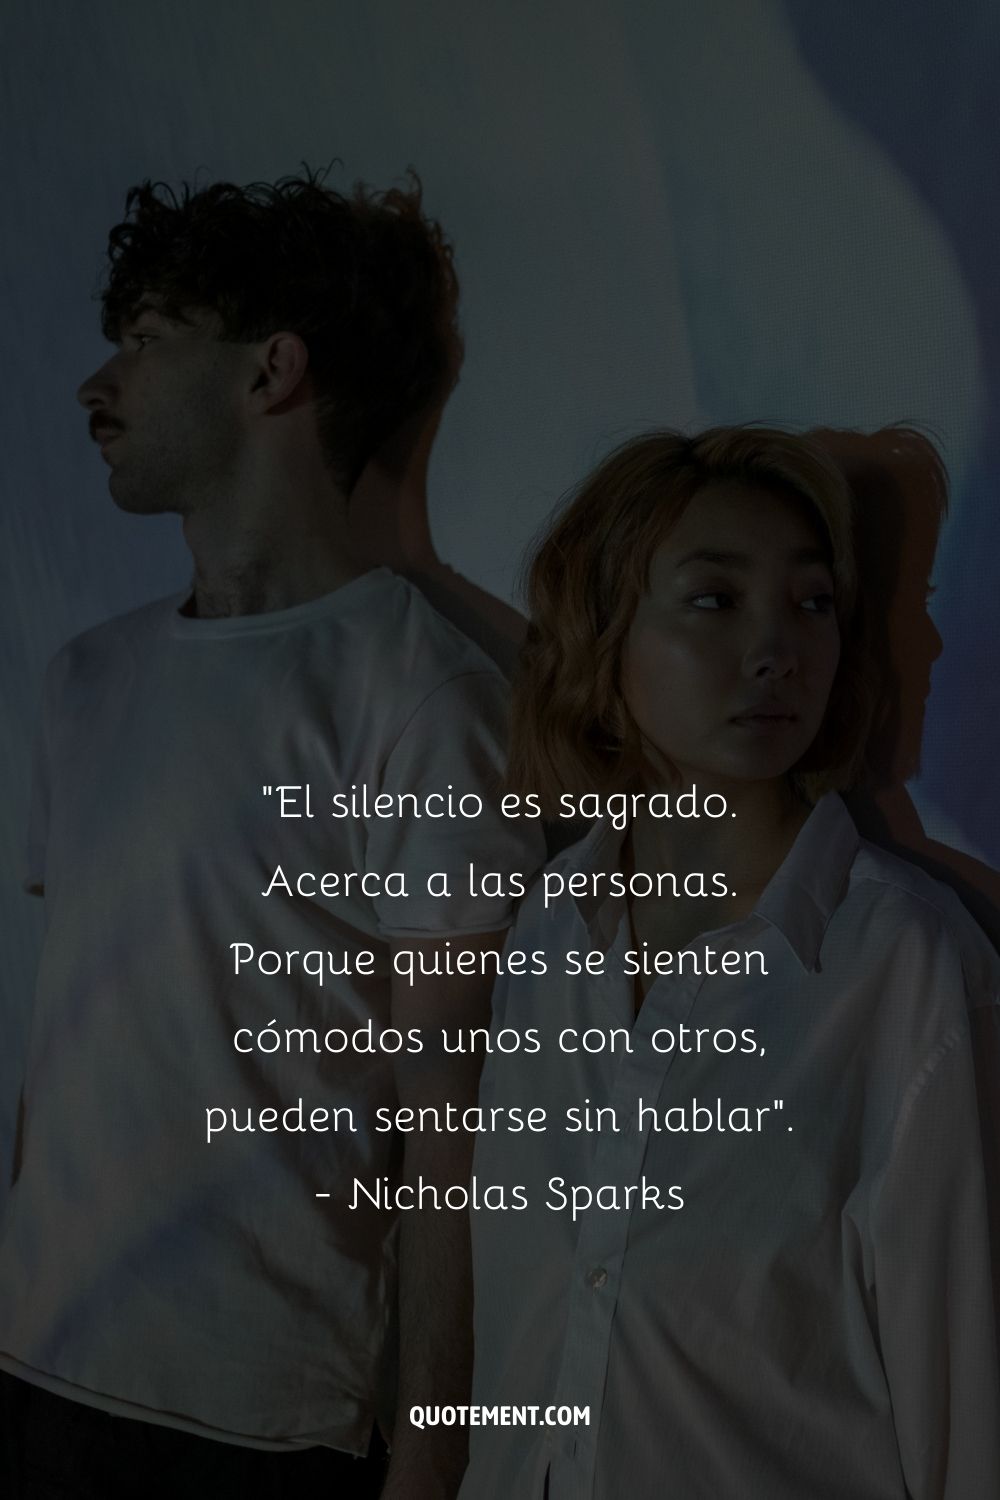 "El silencio es sagrado. Acerca a las personas. Porque quienes se sienten cómodos unos con otros, pueden sentarse sin hablar". - Nicholas Sparks